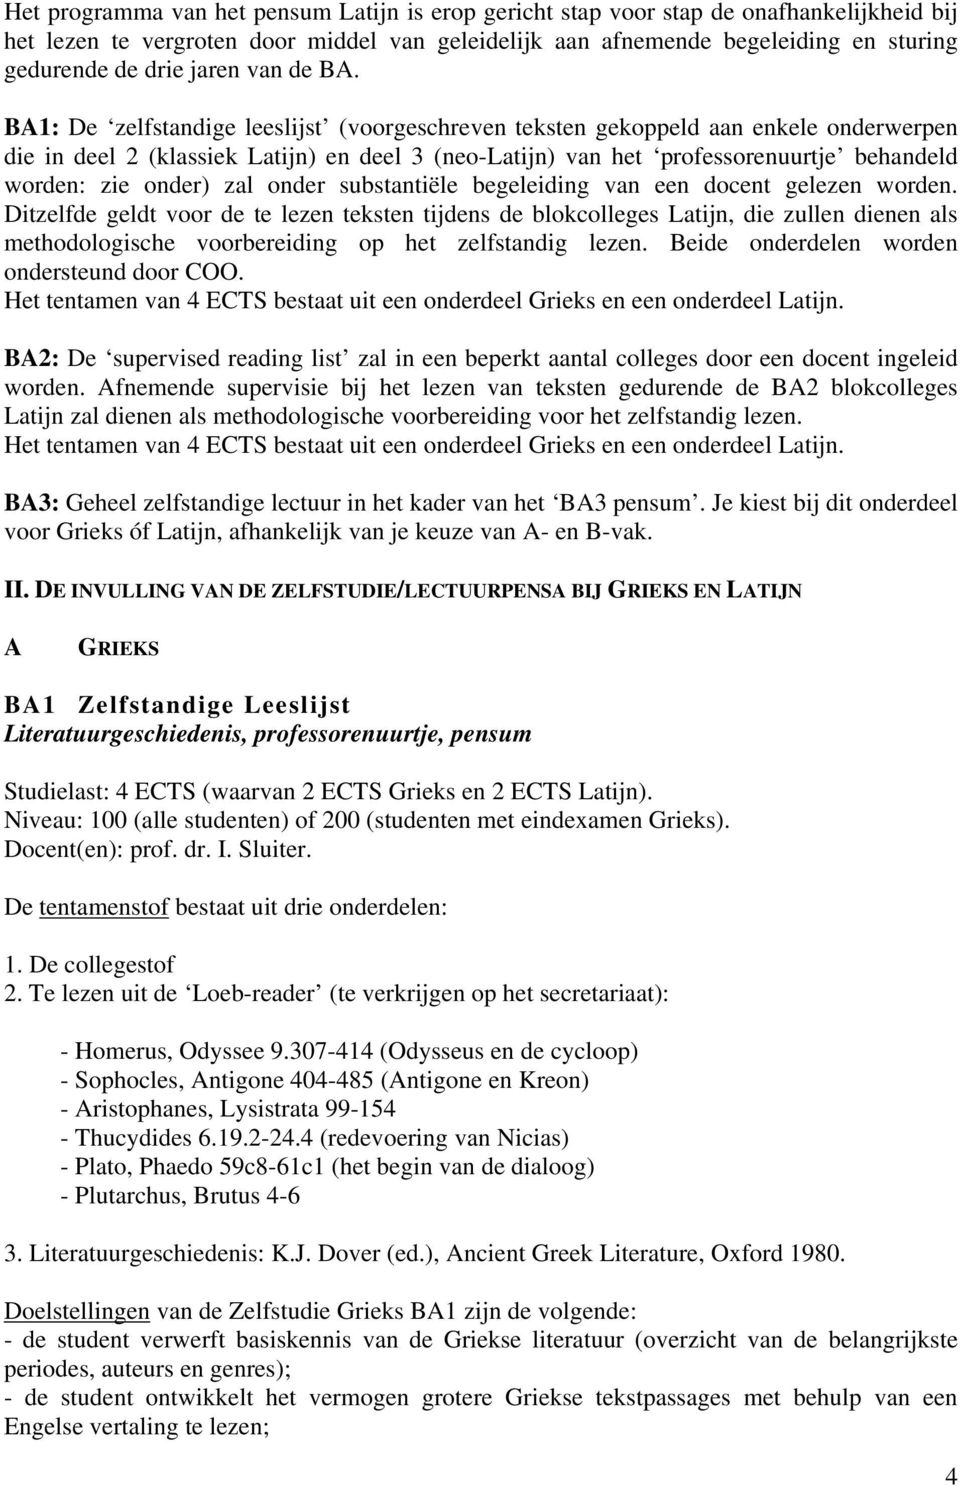 BA1: De zelfstandige leeslijst (voorgeschreven teksten gekoppeld aan enkele onderwerpen die in deel 2 (klassiek Latijn) en deel 3 (neo-latijn) van het professorenuurtje behandeld worden: zie onder)